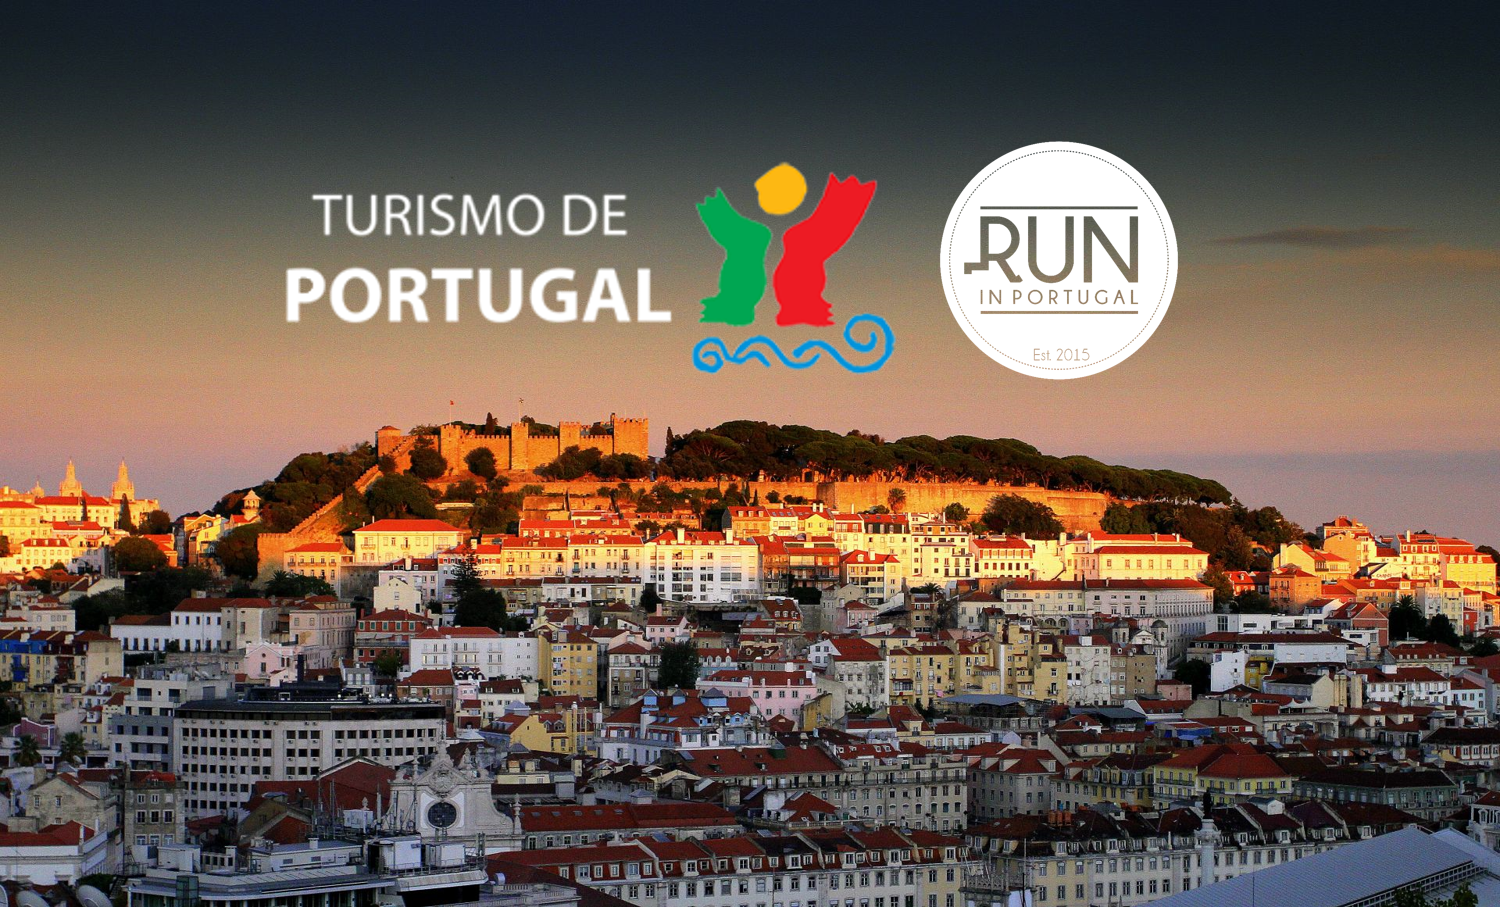 Run in Portugal is recognized by Turismo de Portugal